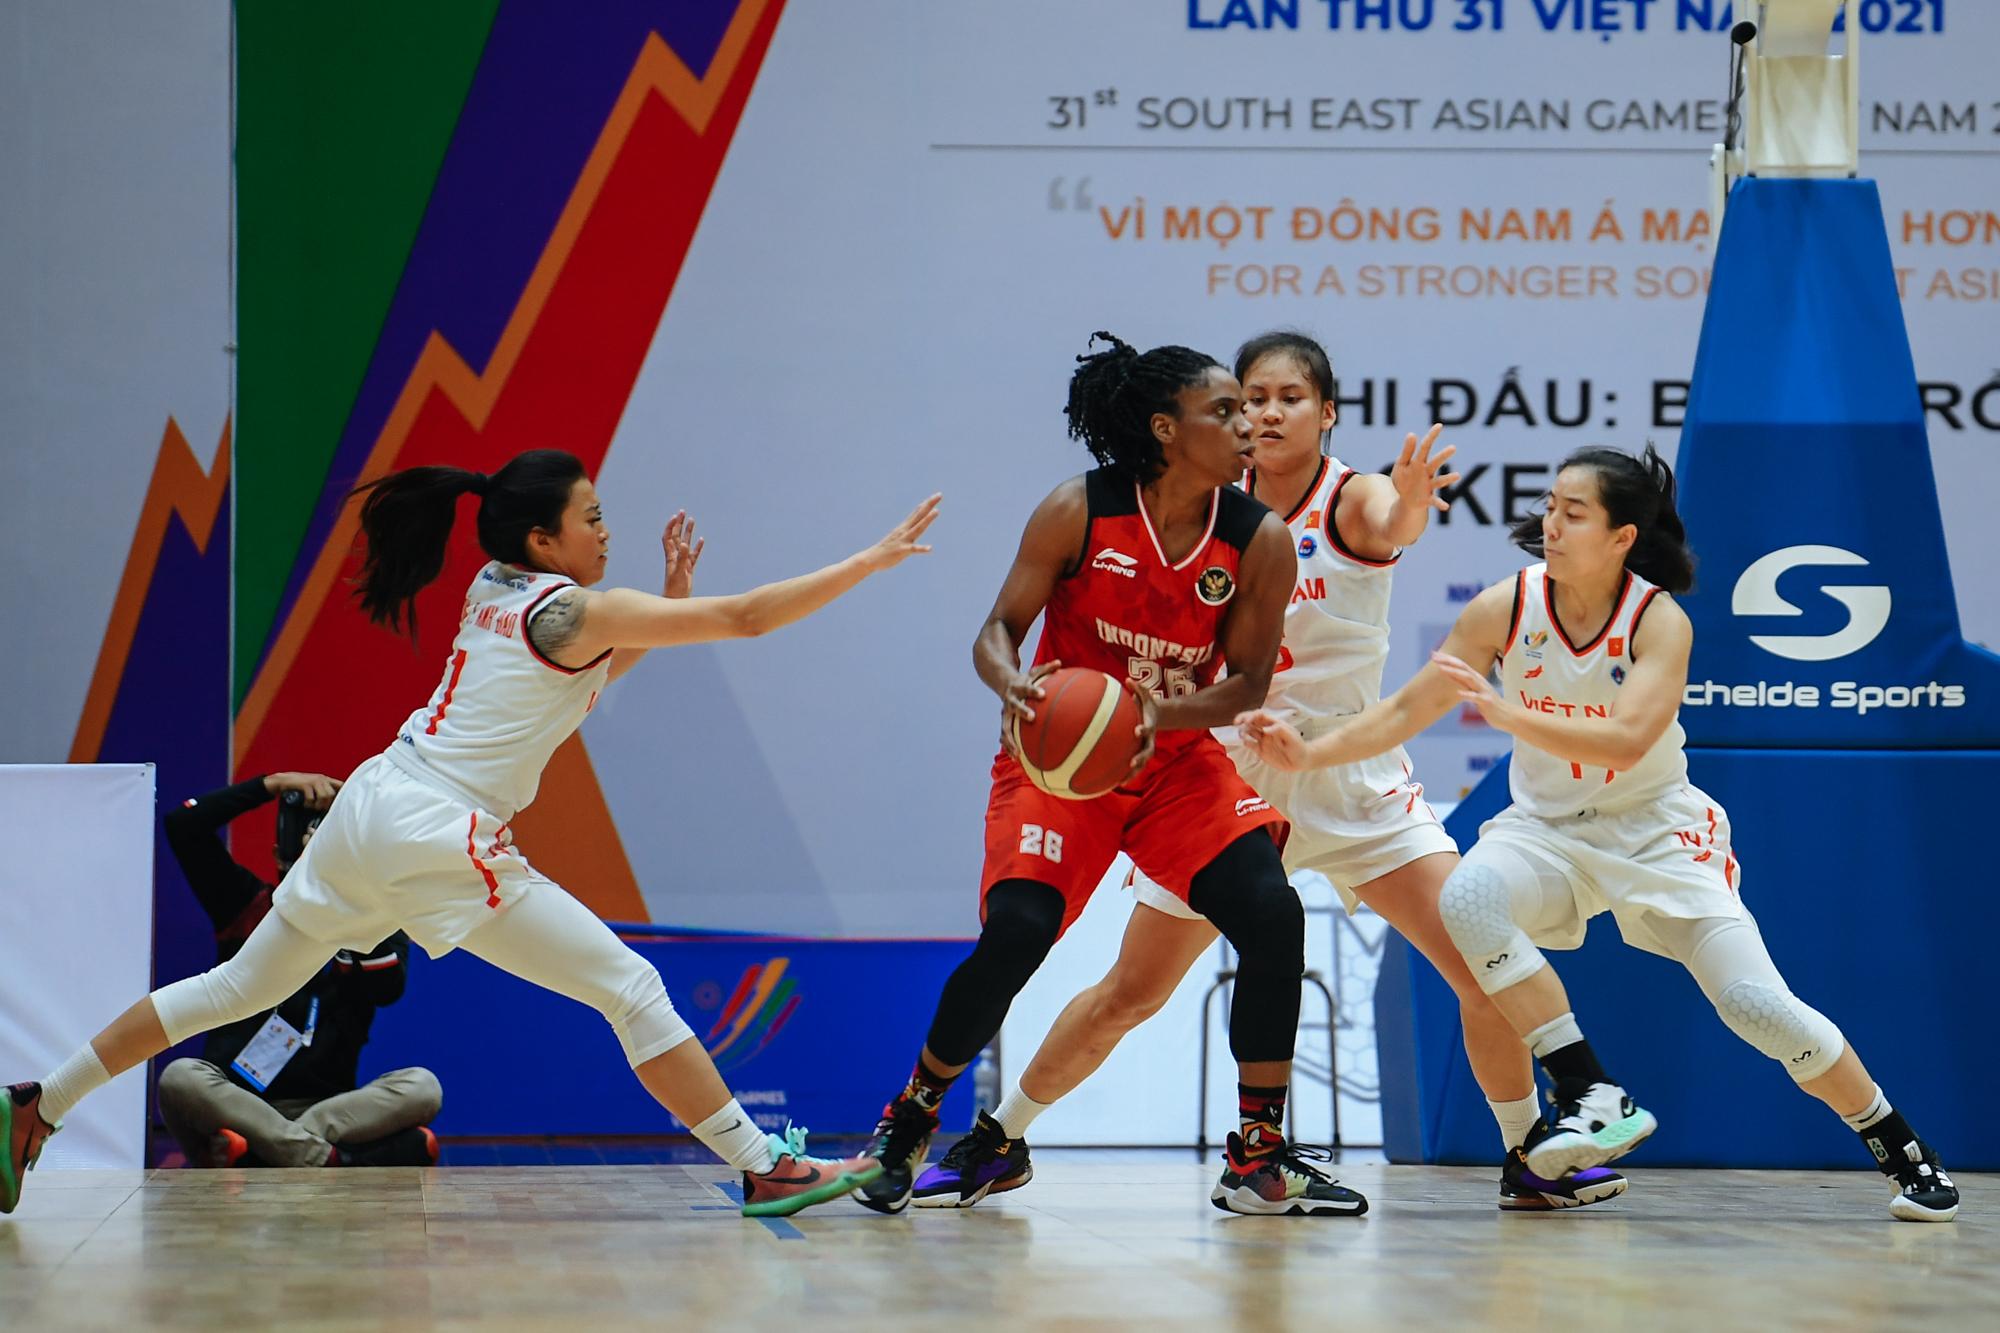 Tuyển nữ bóng rổ Việt Nam thua trước Indonesia nhưng thắng trong lòng người hâm mộ - Ảnh 1.